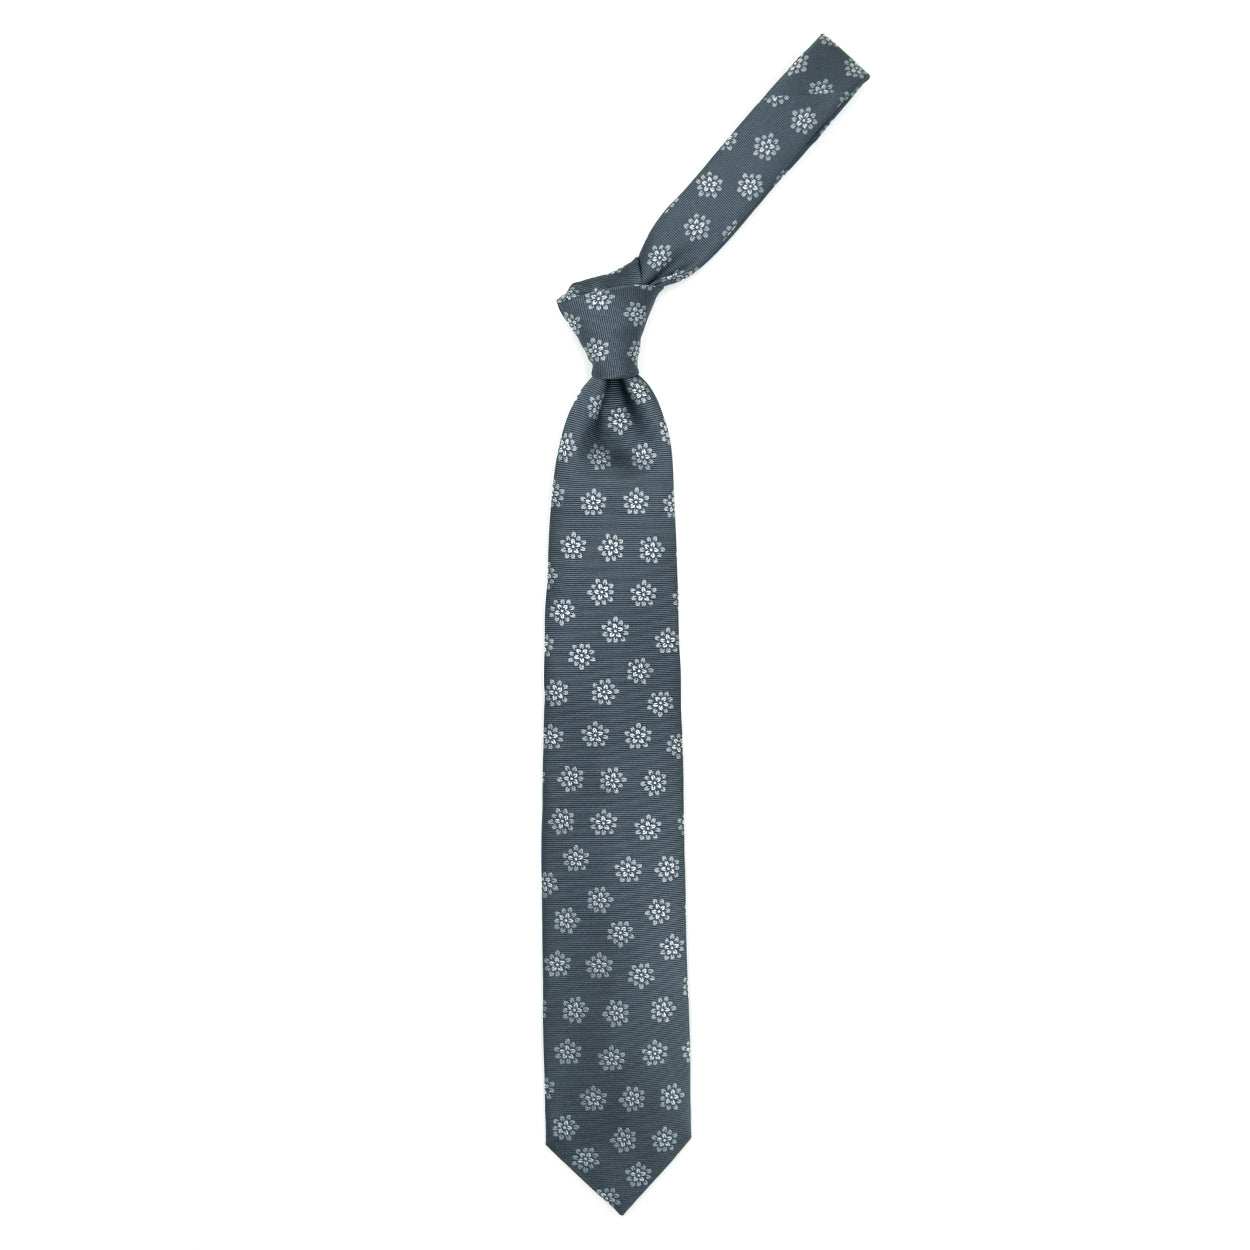 Grey tie with light grey flowers